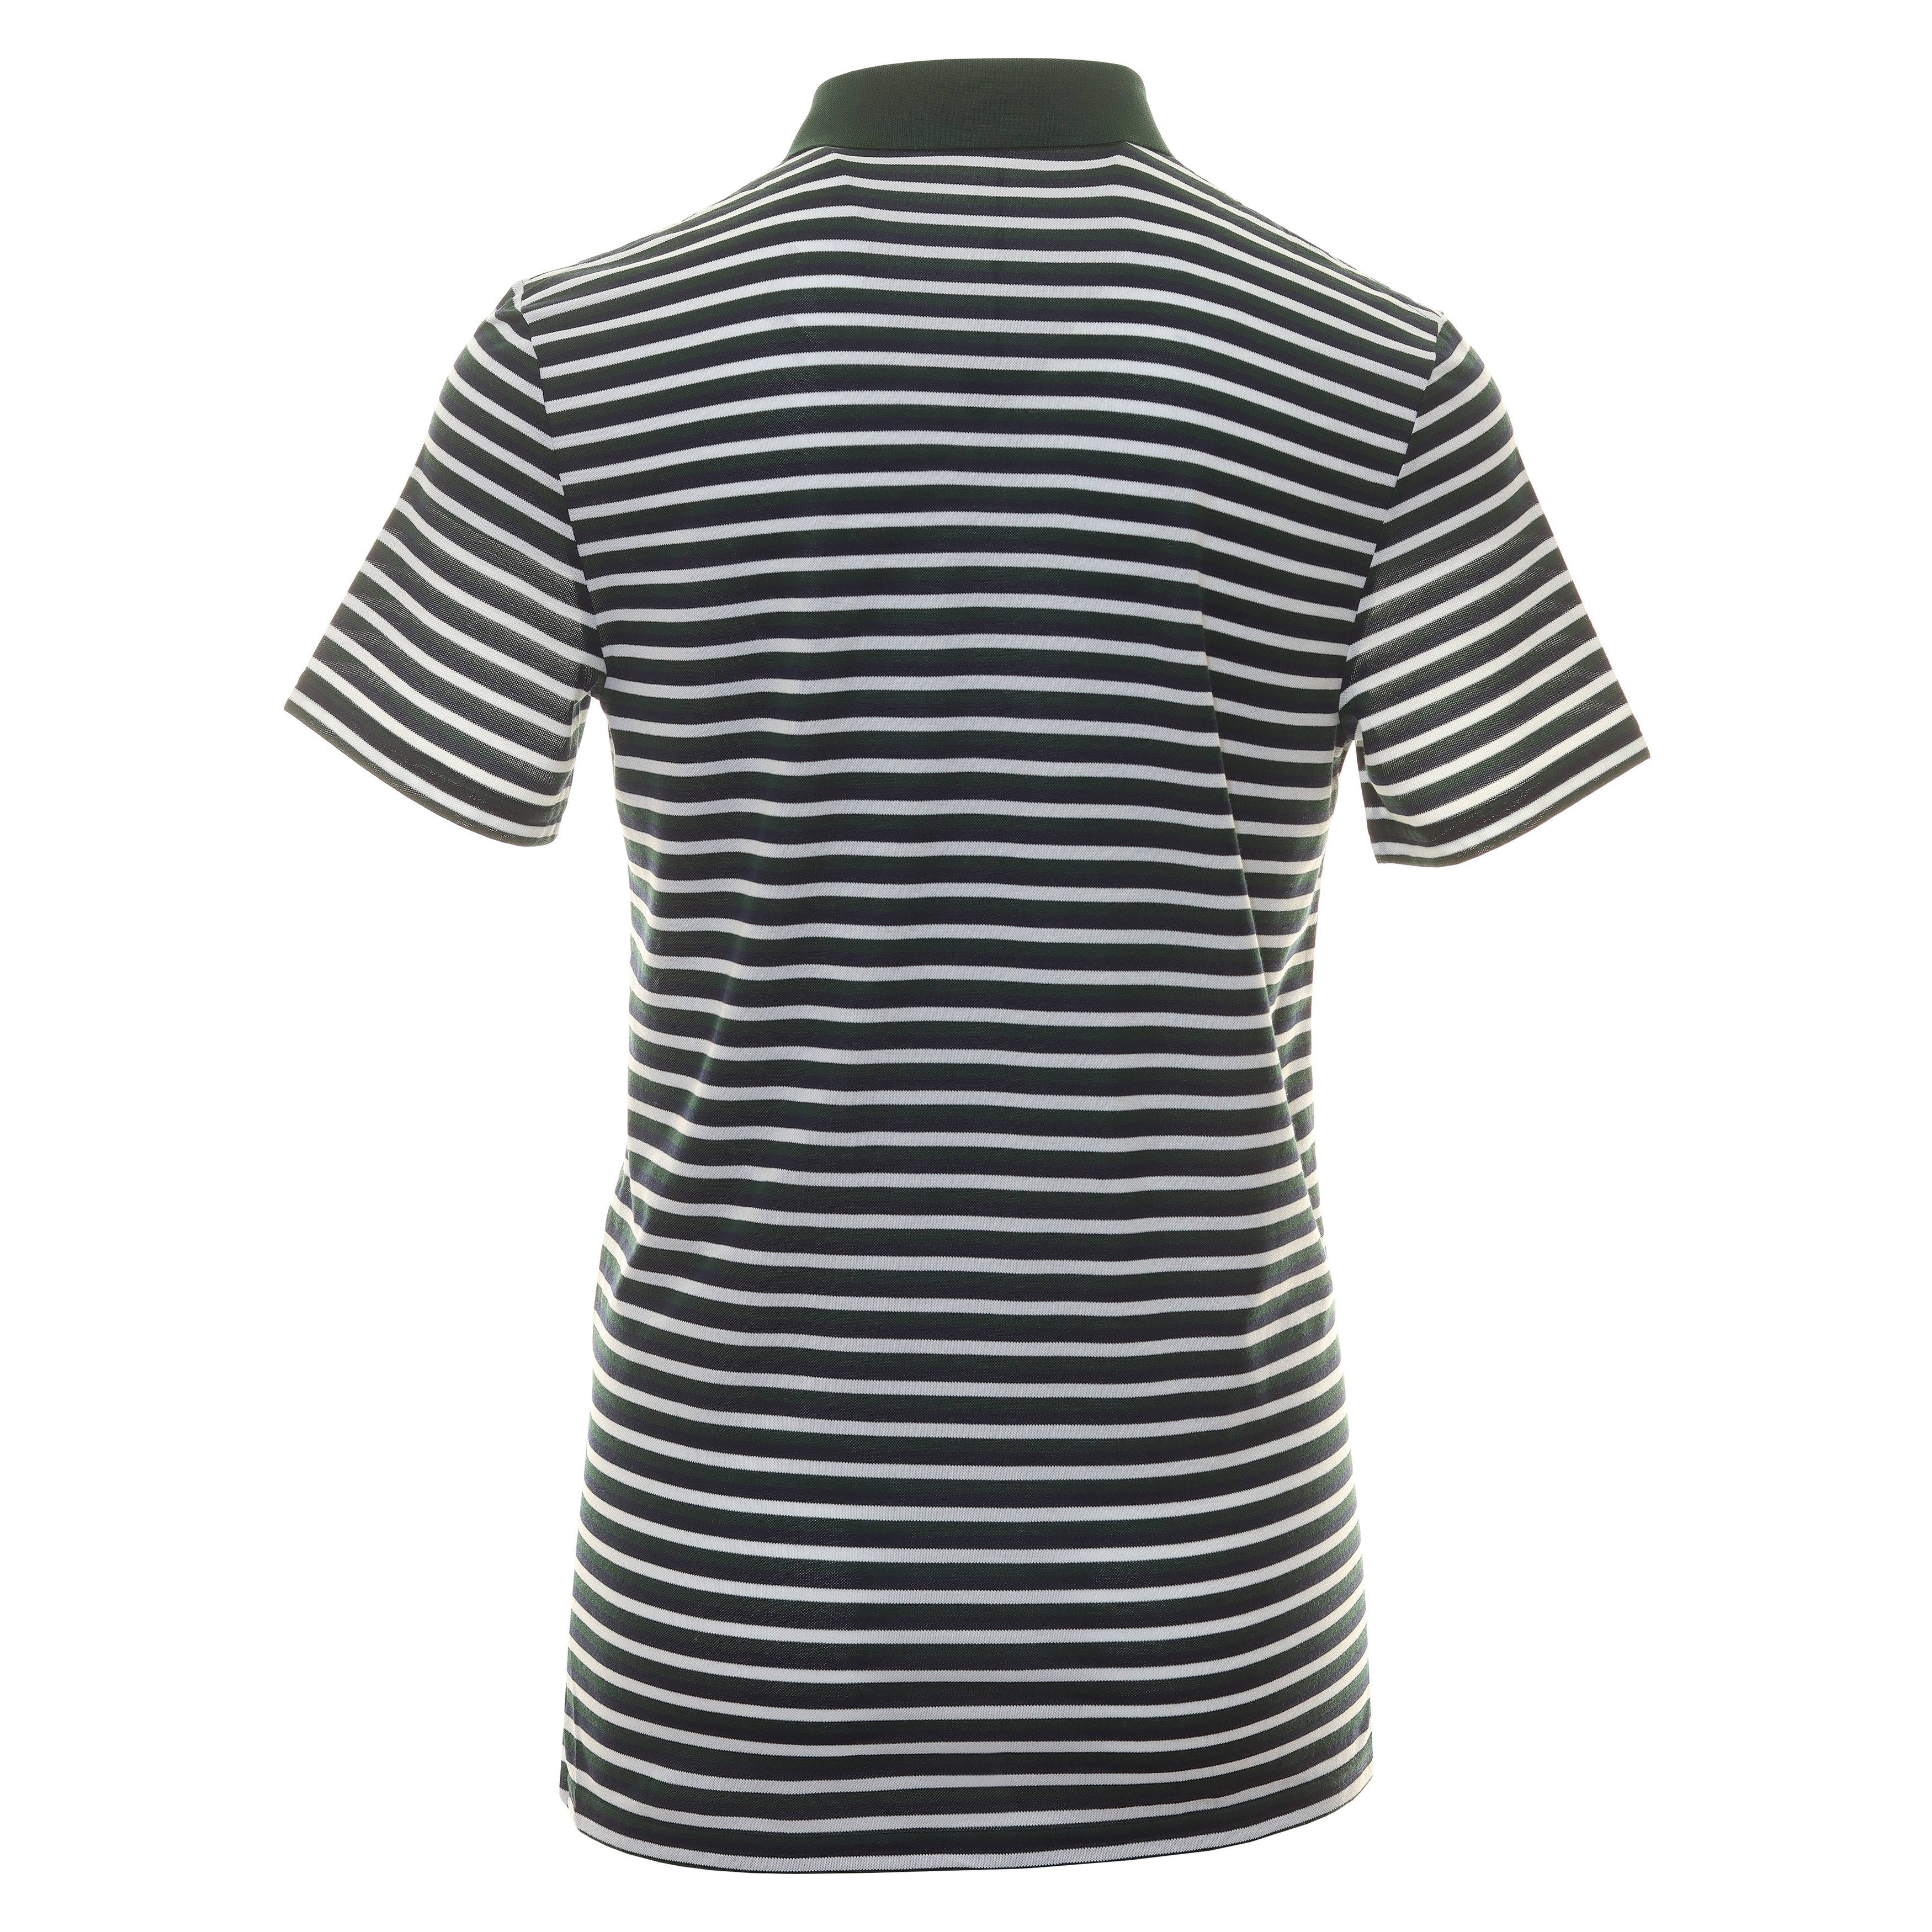 RLX Ralph Lauren Tour Stripe Pique Polo Shirt 785915585 Moss Agate ...